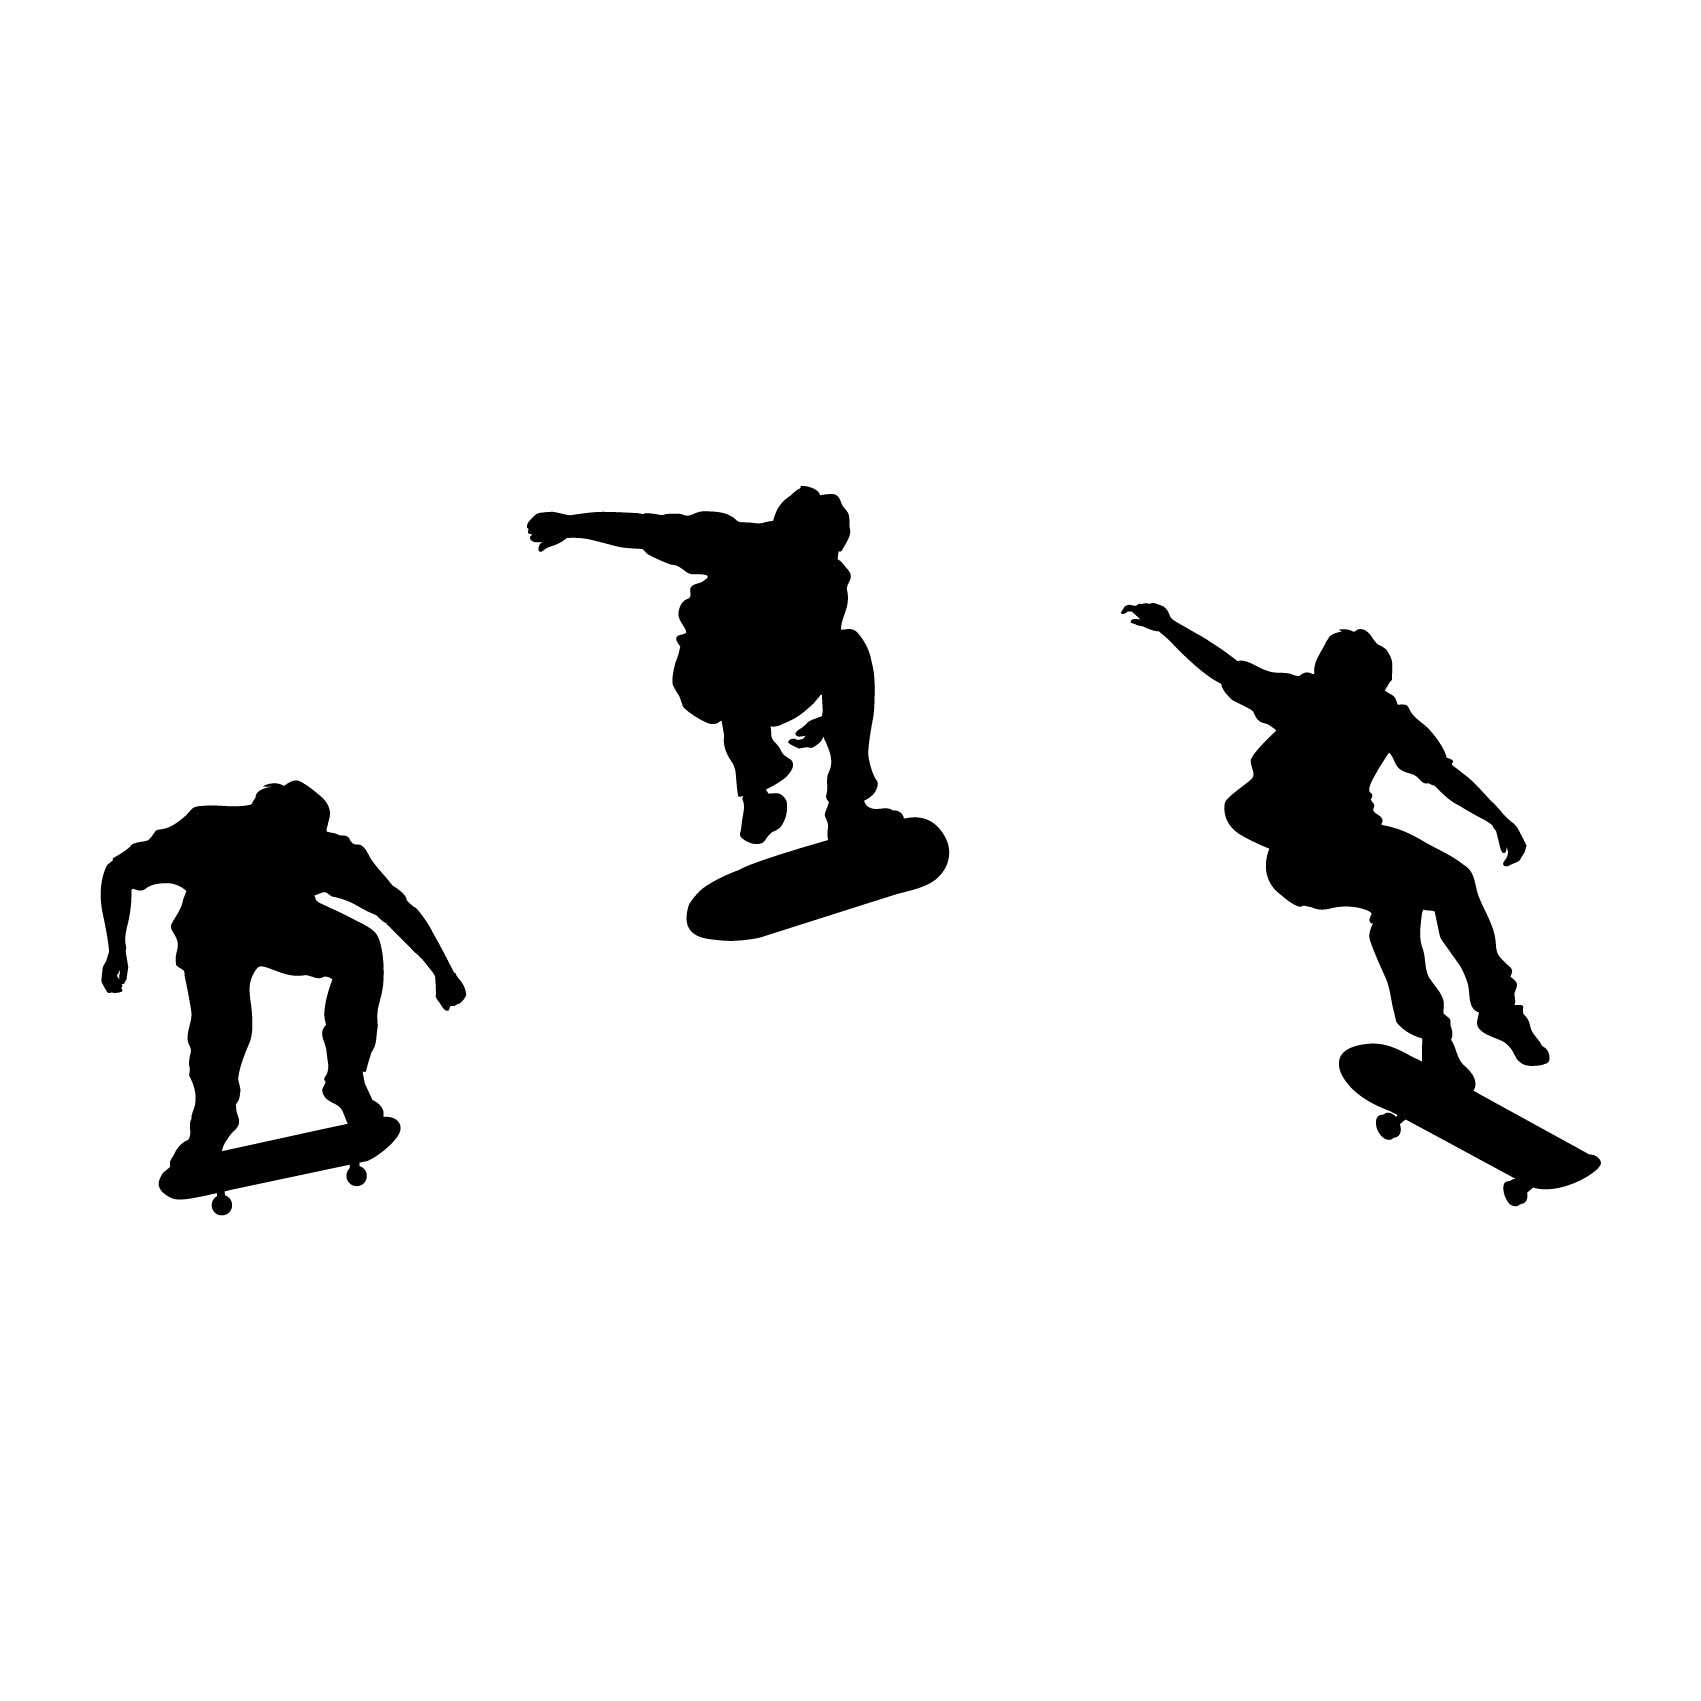 stickers-silhouettes-skateboard-ref44silhouette-stickers-muraux-silhouette-autocollant-chambre-salon-sticker-mural-ombre-(2)